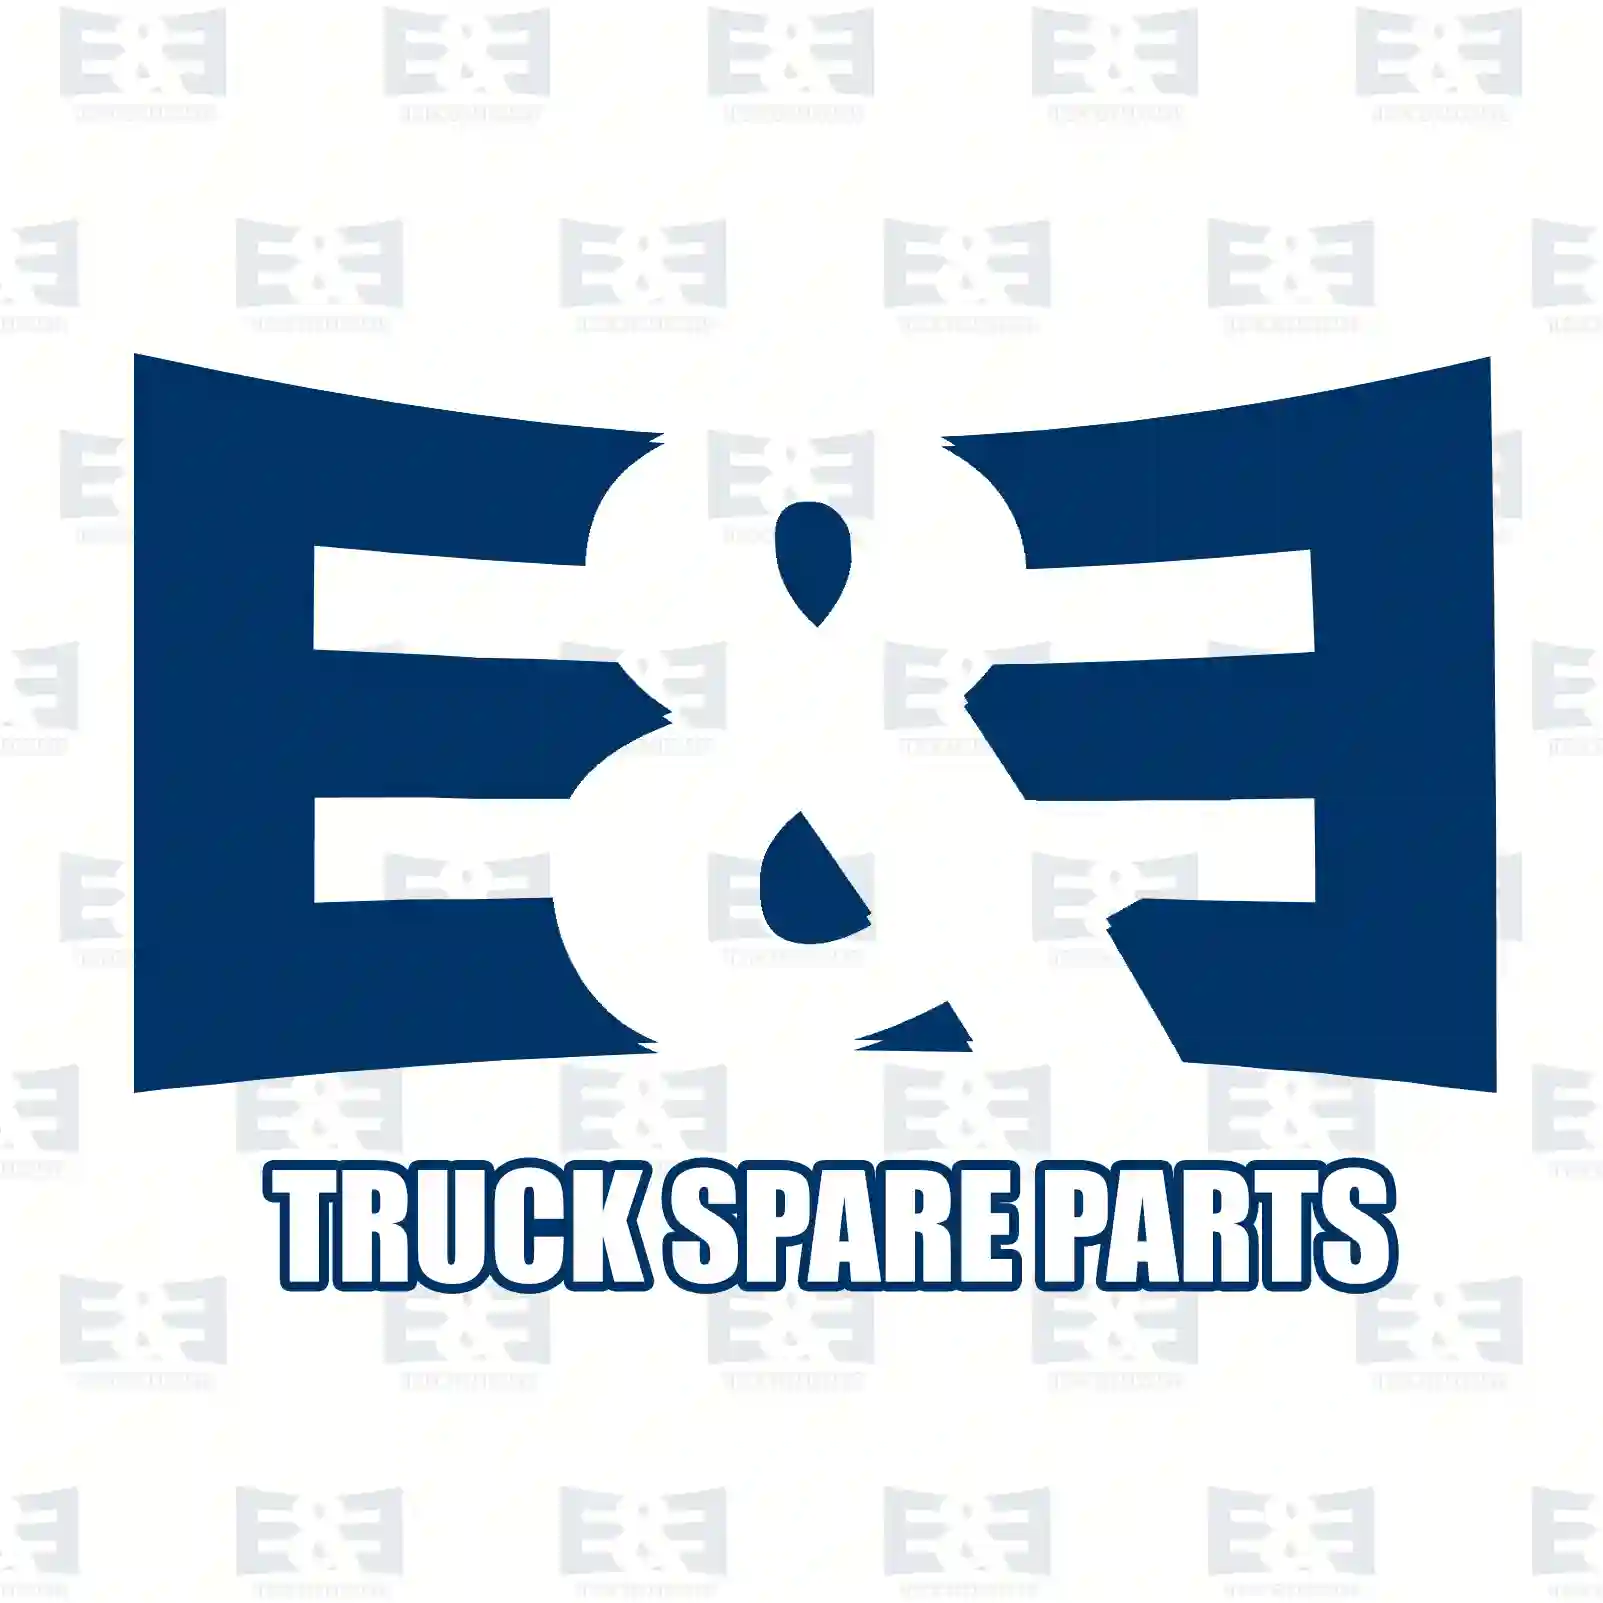 Brake drum, 2E2295962, 6174230201, , , , , , , ||  2E2295962 E&E Truck Spare Parts | Truck Spare Parts, Auotomotive Spare Parts Brake drum, 2E2295962, 6174230201, , , , , , , ||  2E2295962 E&E Truck Spare Parts | Truck Spare Parts, Auotomotive Spare Parts